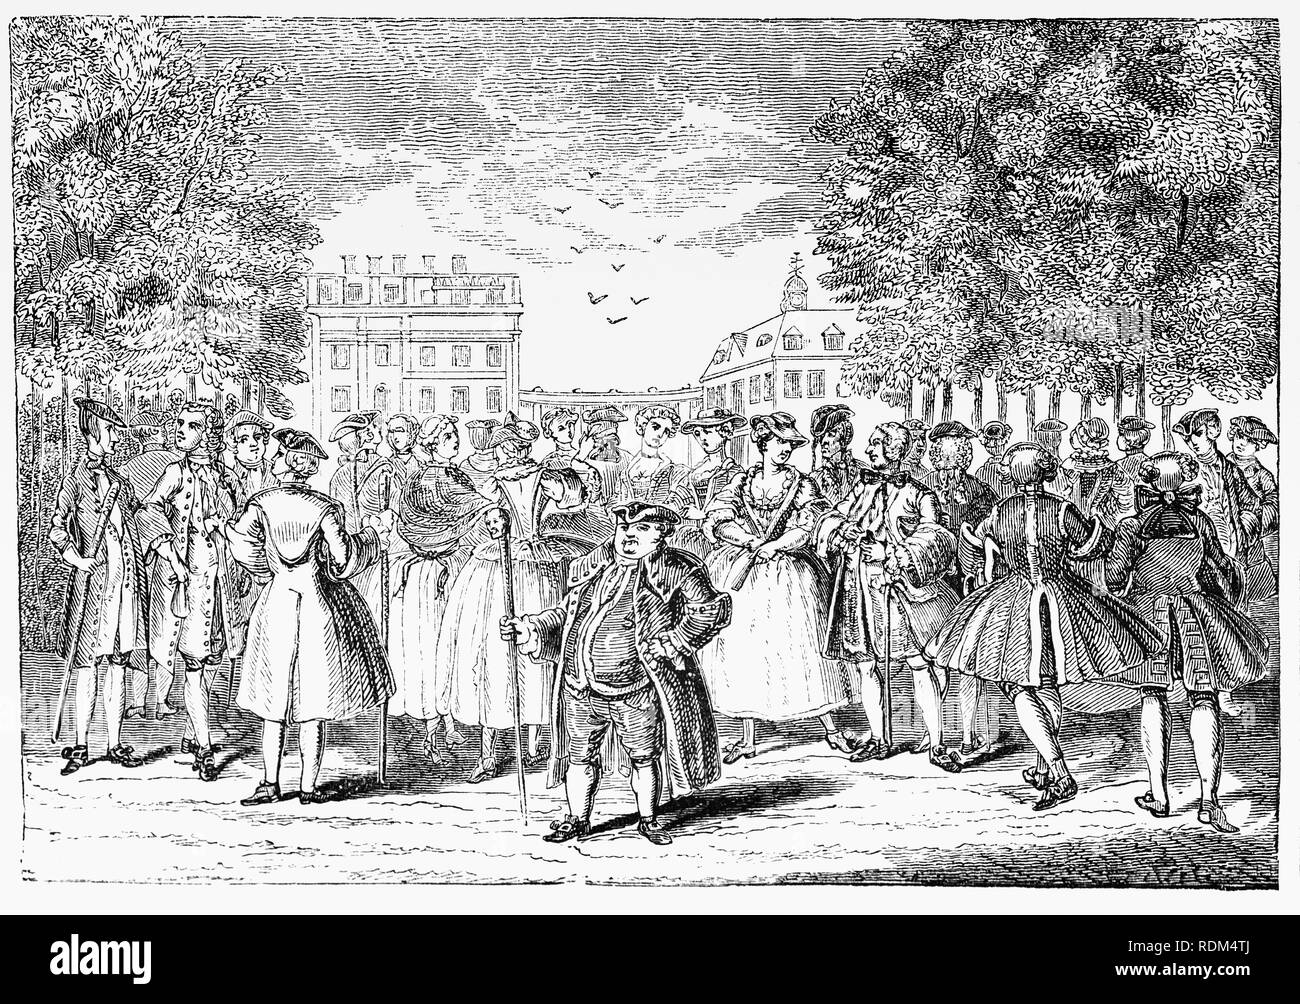 Während des 18. Jahrhunderts, Alamode, war einst die Bezeichnung für einen Stoff, aber in diesem Fall bedeutet "aus der Mode". Der Adel Promenierenden im Jahre 1735 durch den St. James Park in London, England. Stockfoto